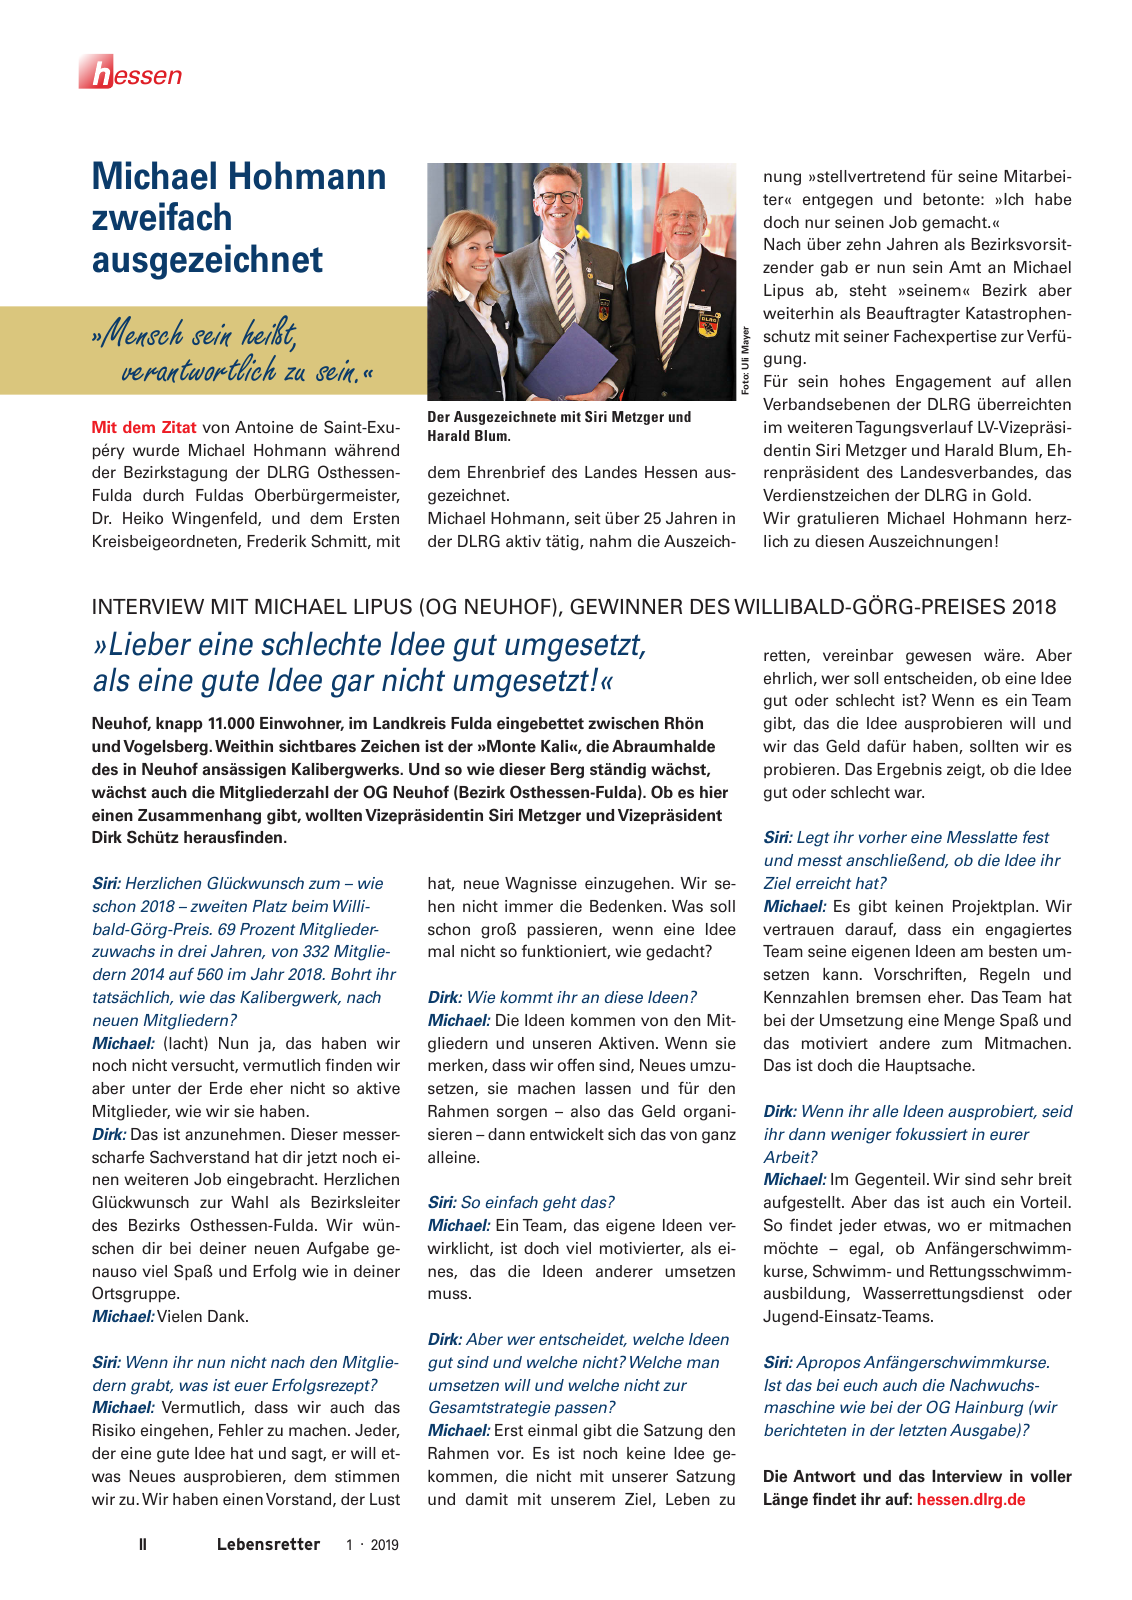 Vorschau Lebensretter 1/2019 –  Regionalausgabe Hessen Seite 4